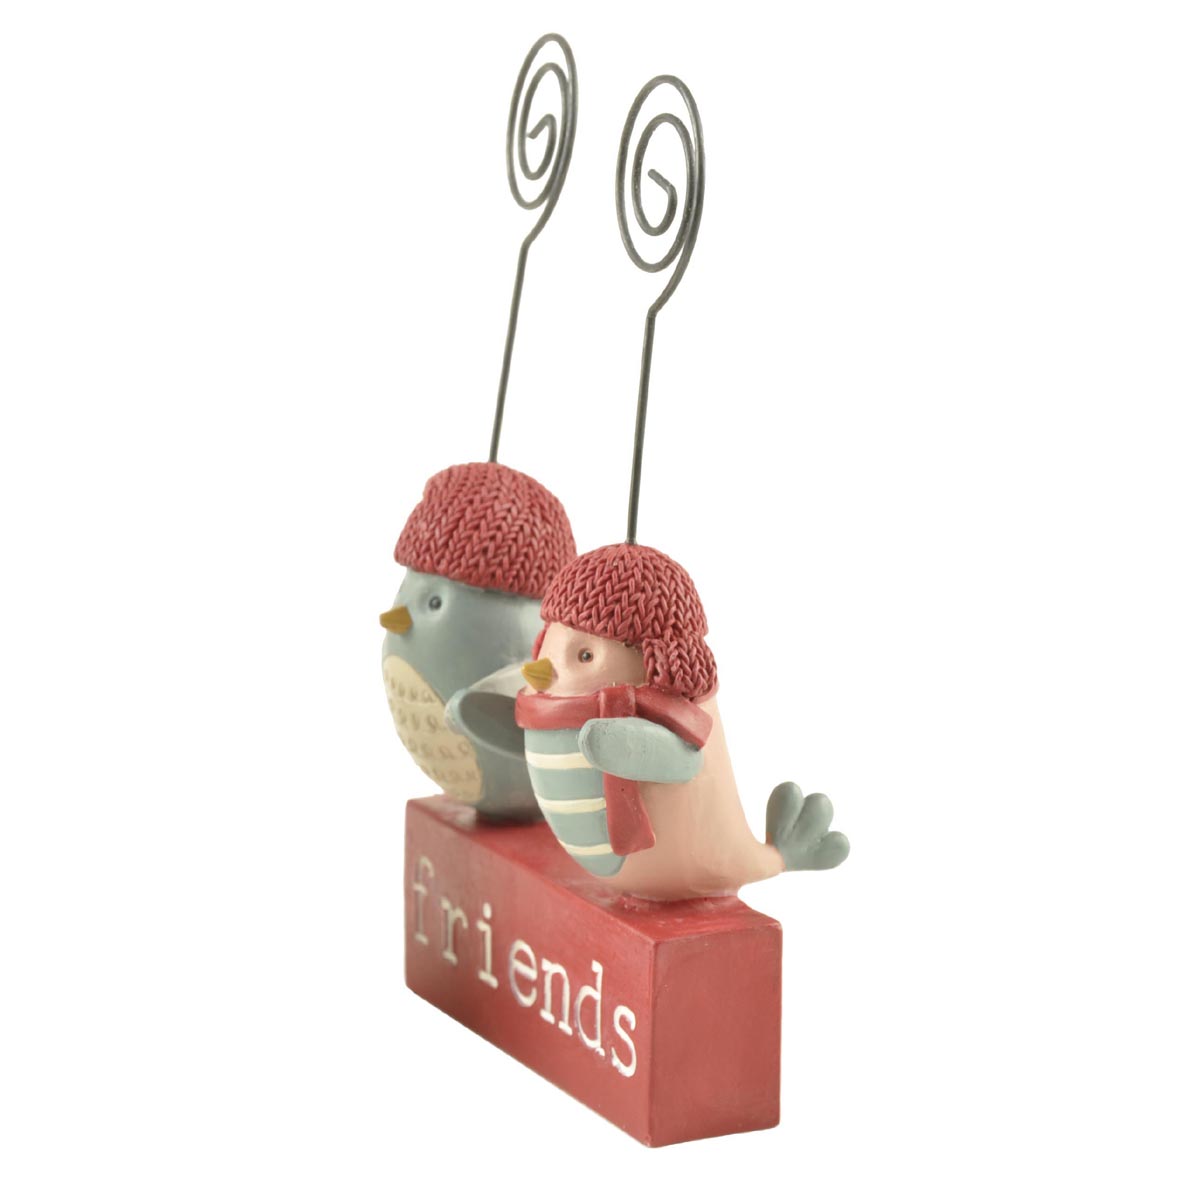 Ennas decorative mini animal figurines animal-1